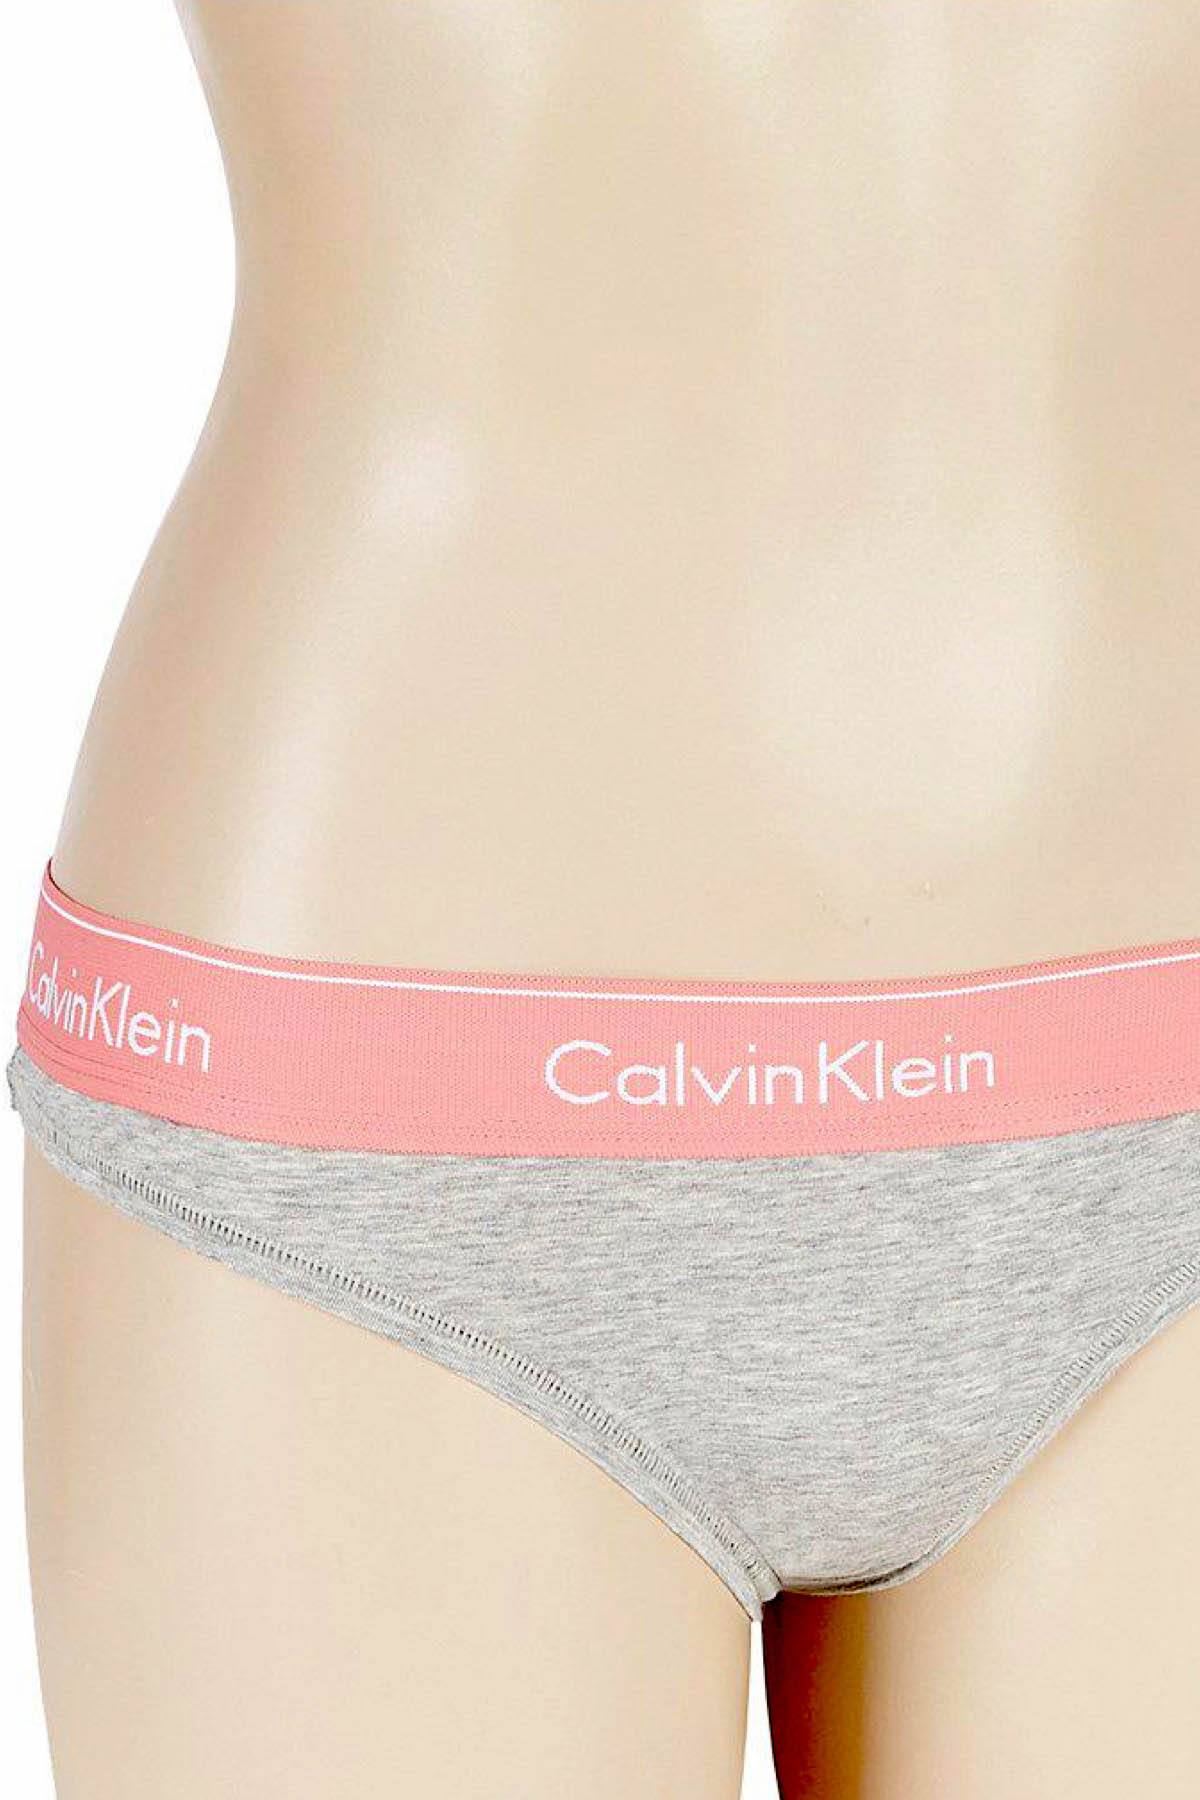 Calvin Klein Heather-Grey/Sensation-Pink Modern Cotton Thong